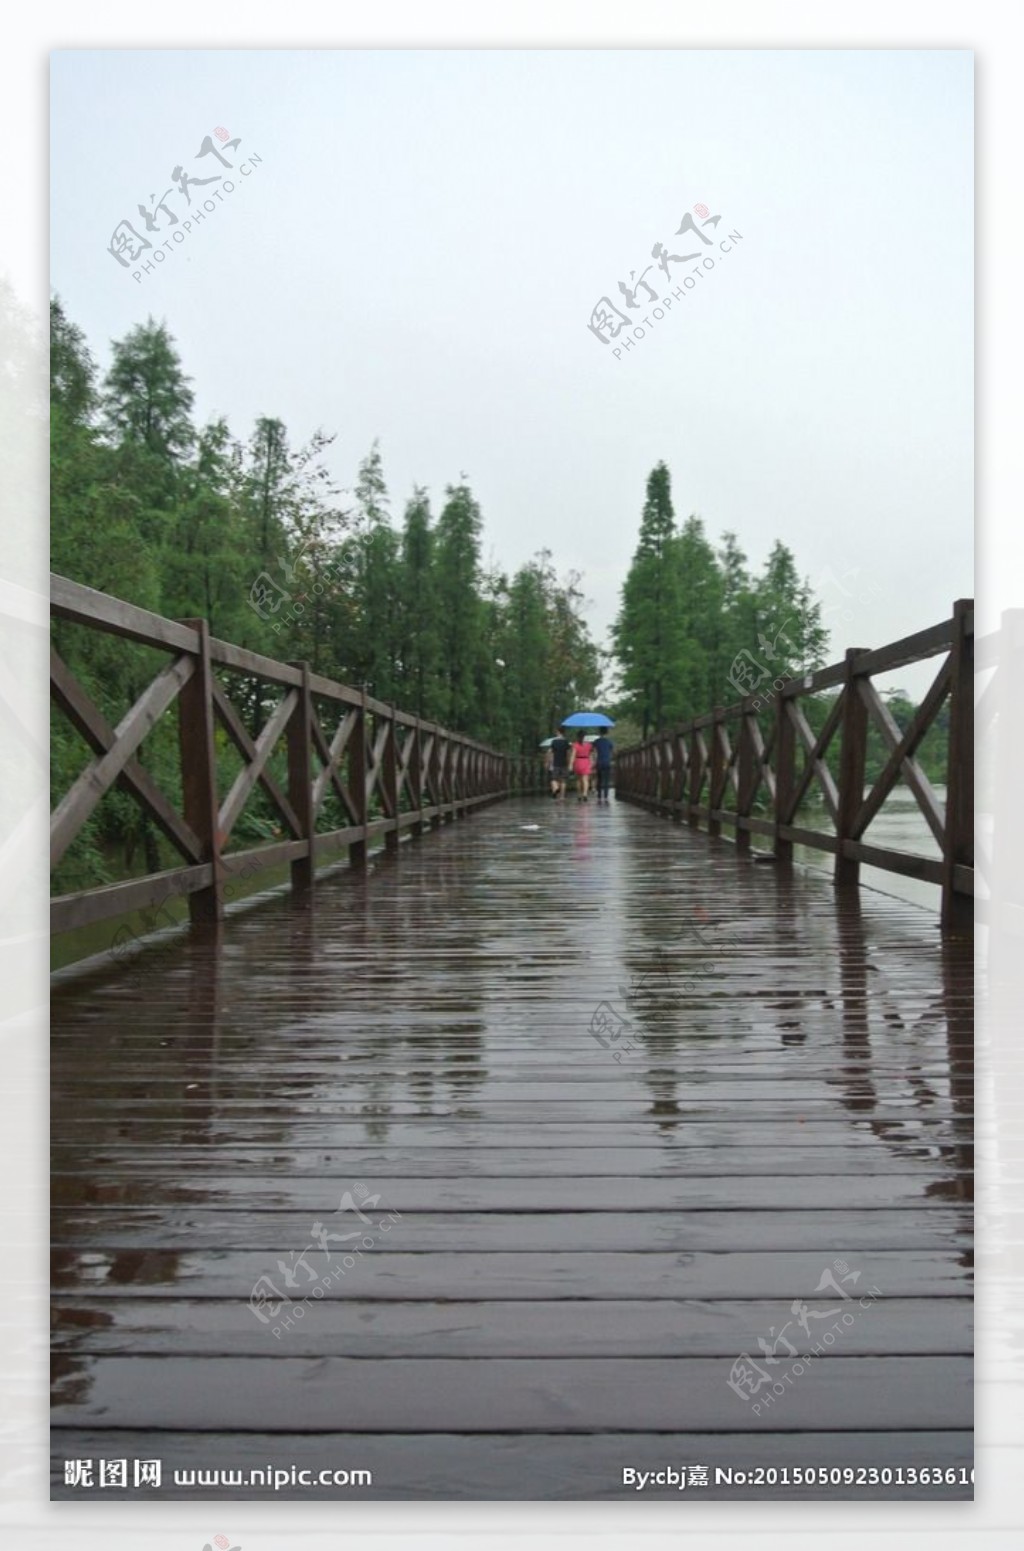 一条雨后的木桥图片